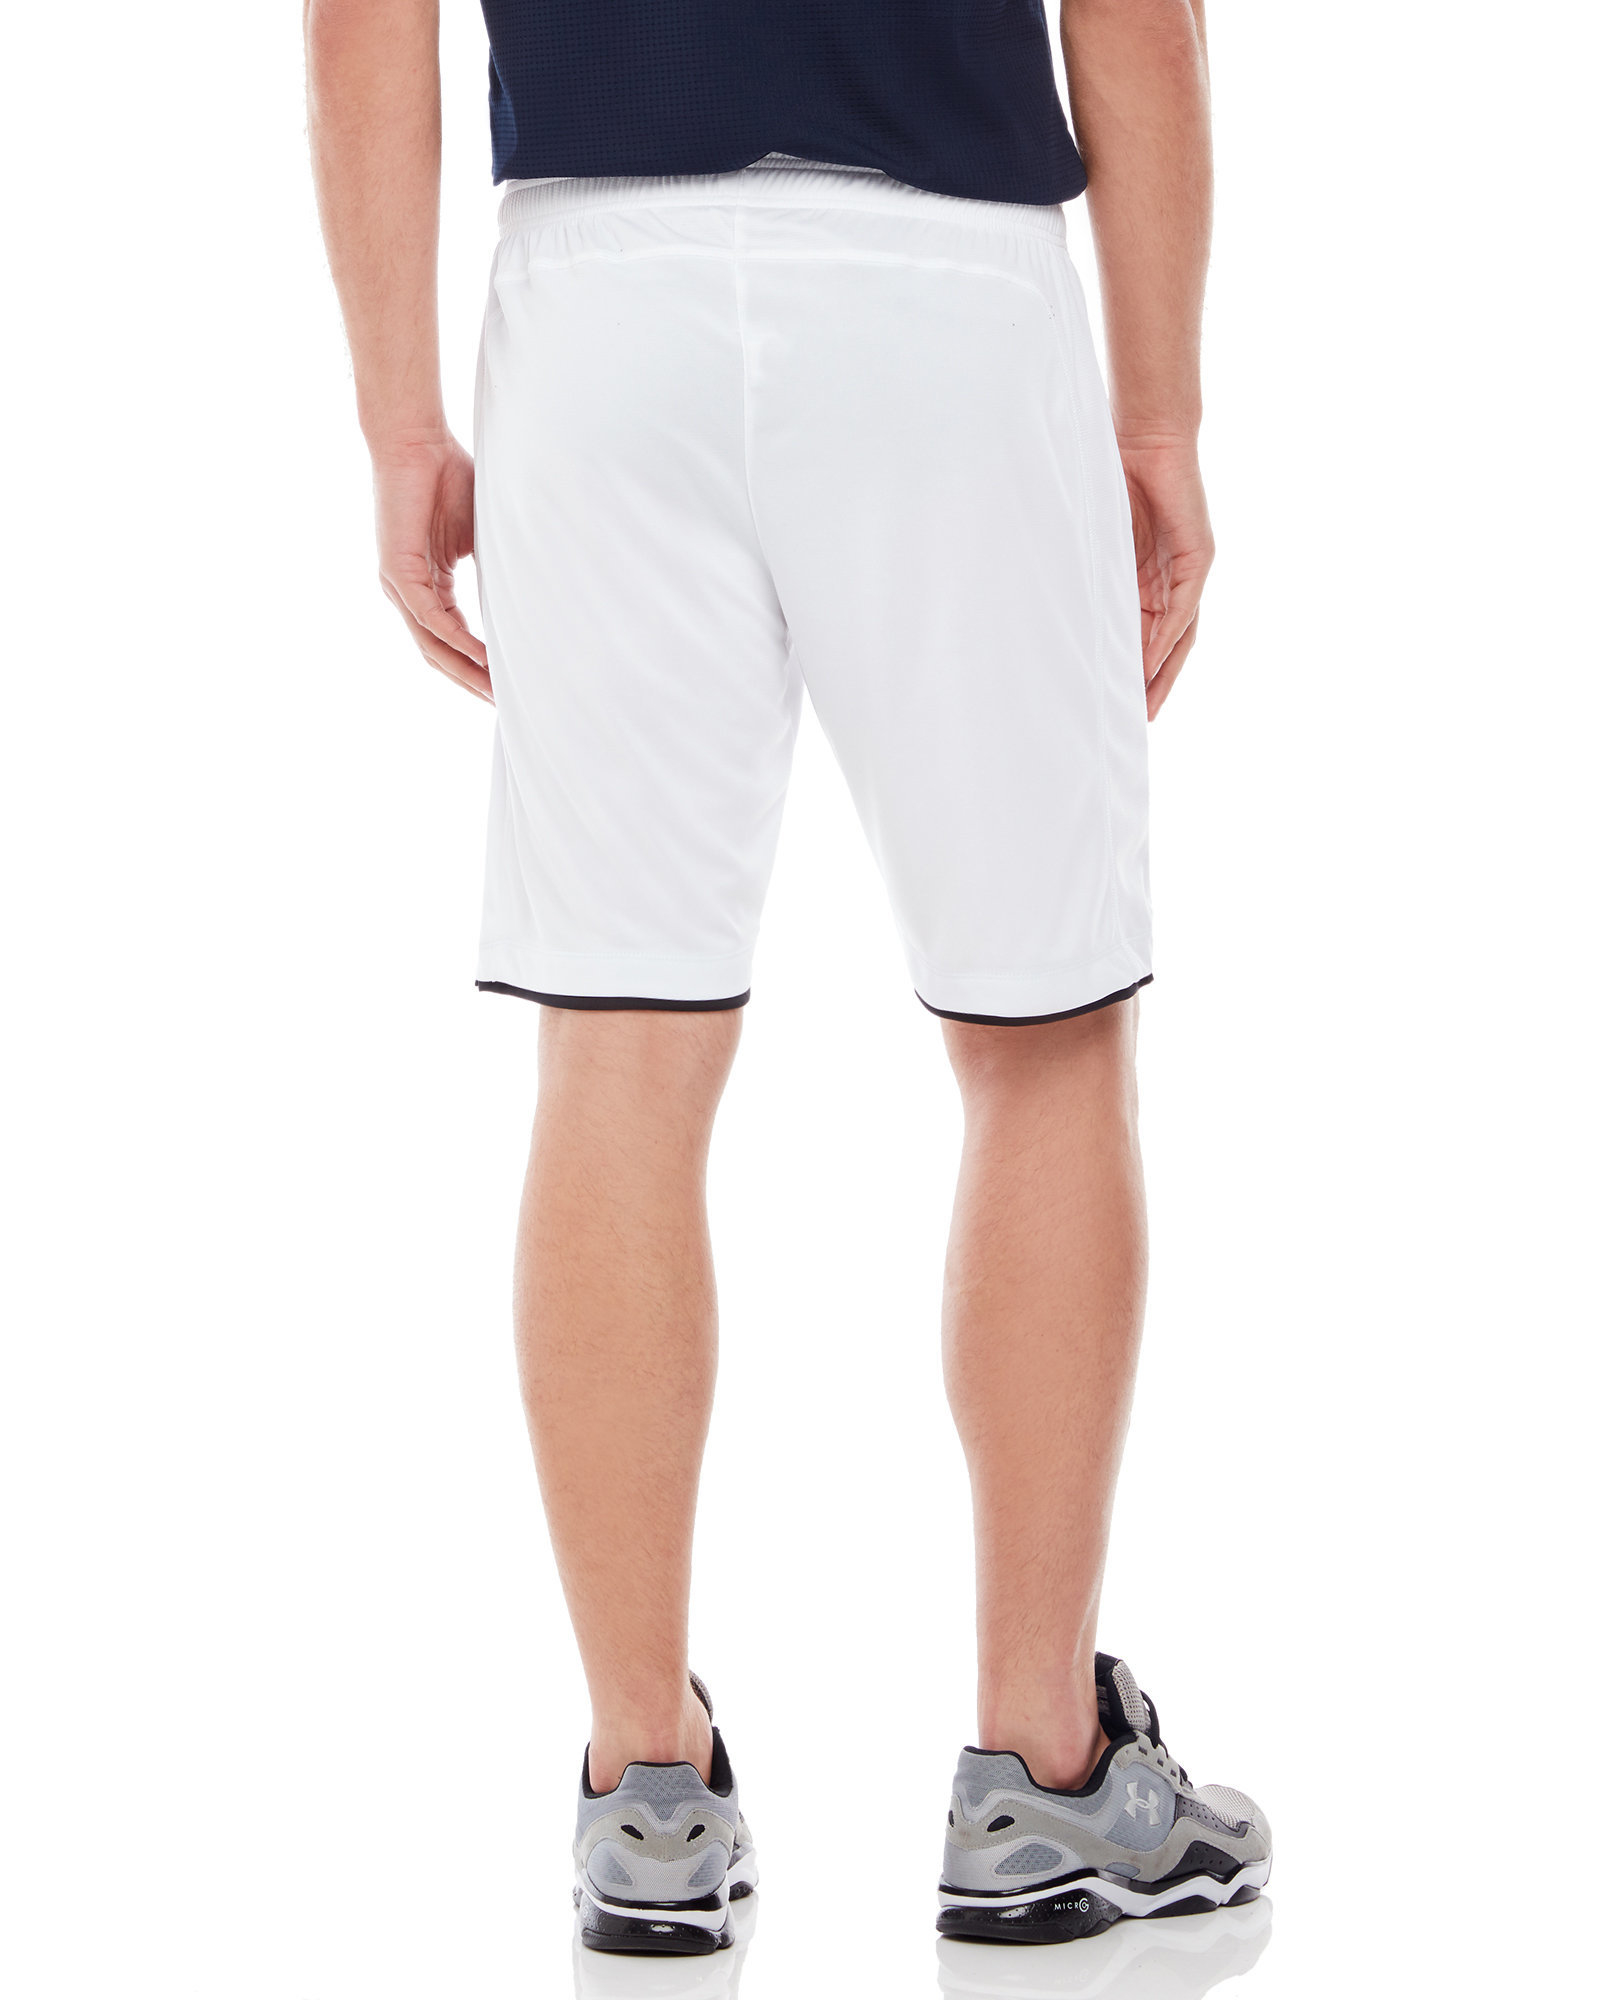 Lyst - Fila Focus Shorts in White for Men